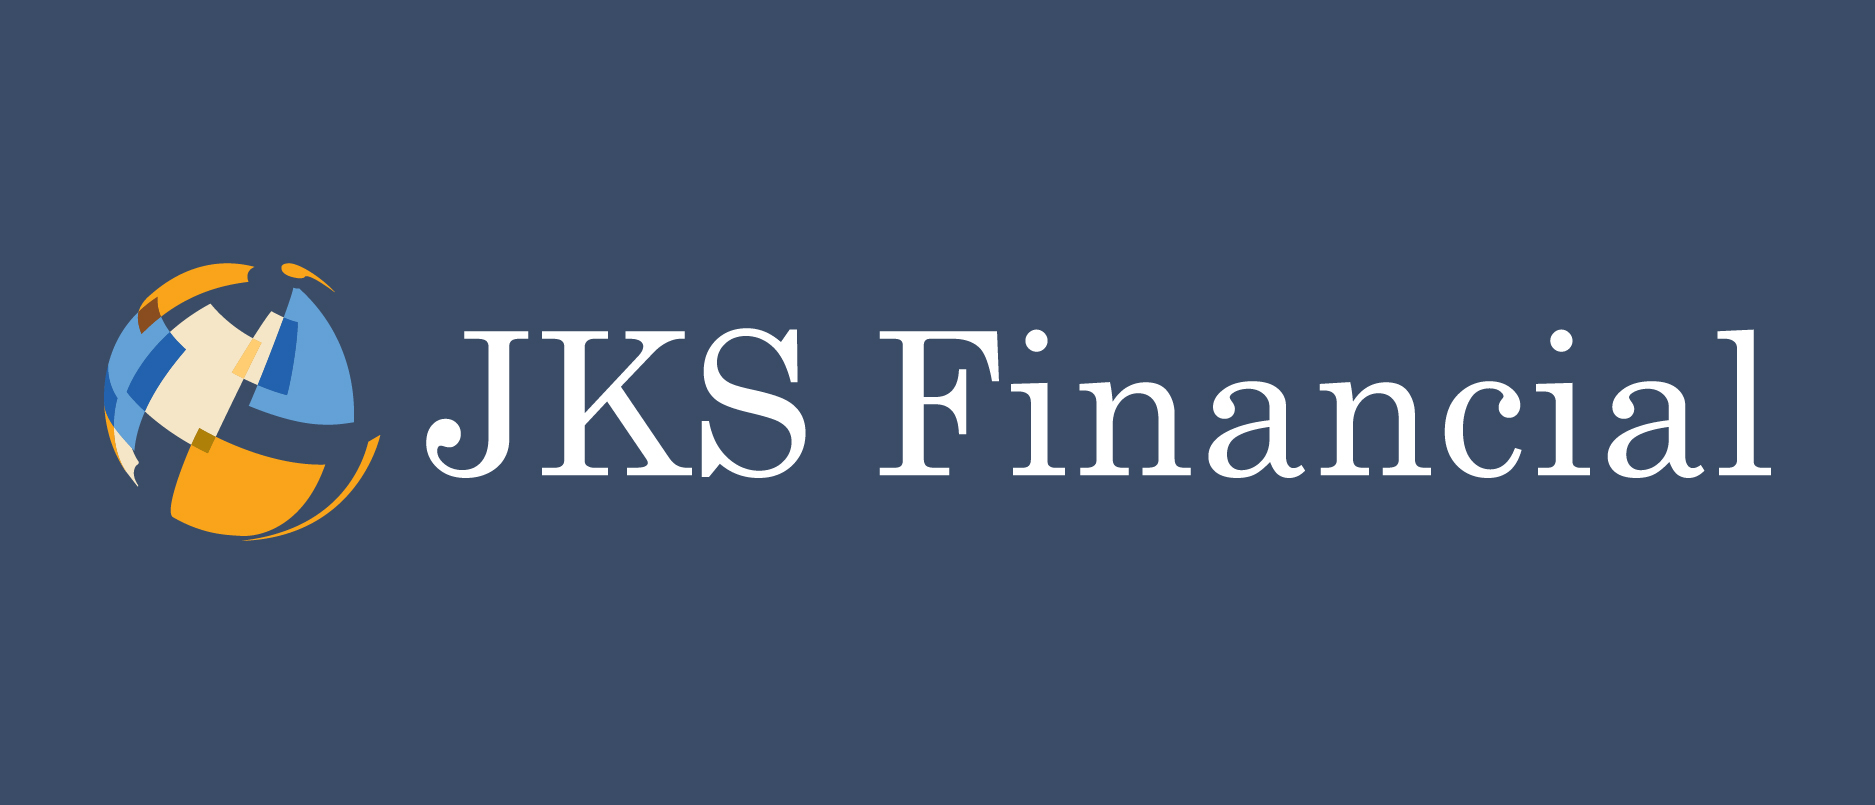 JKS Financial Donates to United Way of Southwestern Pennsylvania Through Rebound Rewards